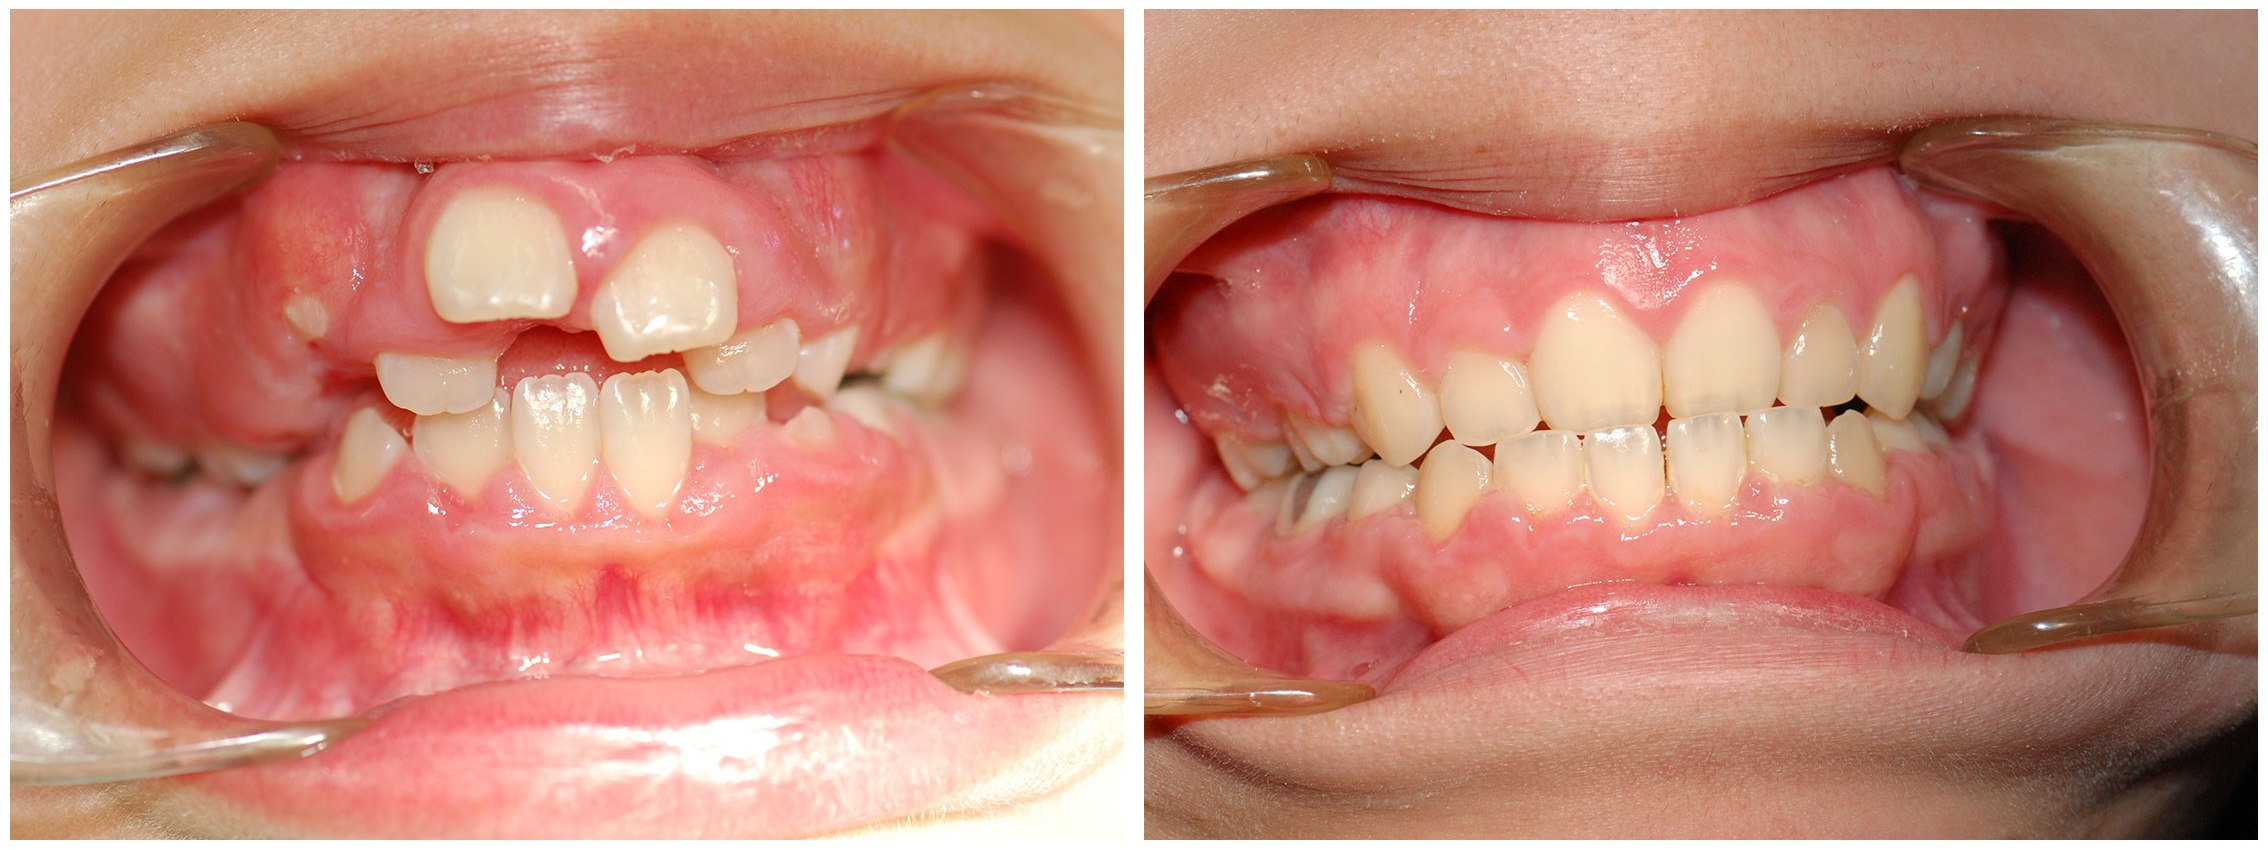 Infant Dental Braces Before & After